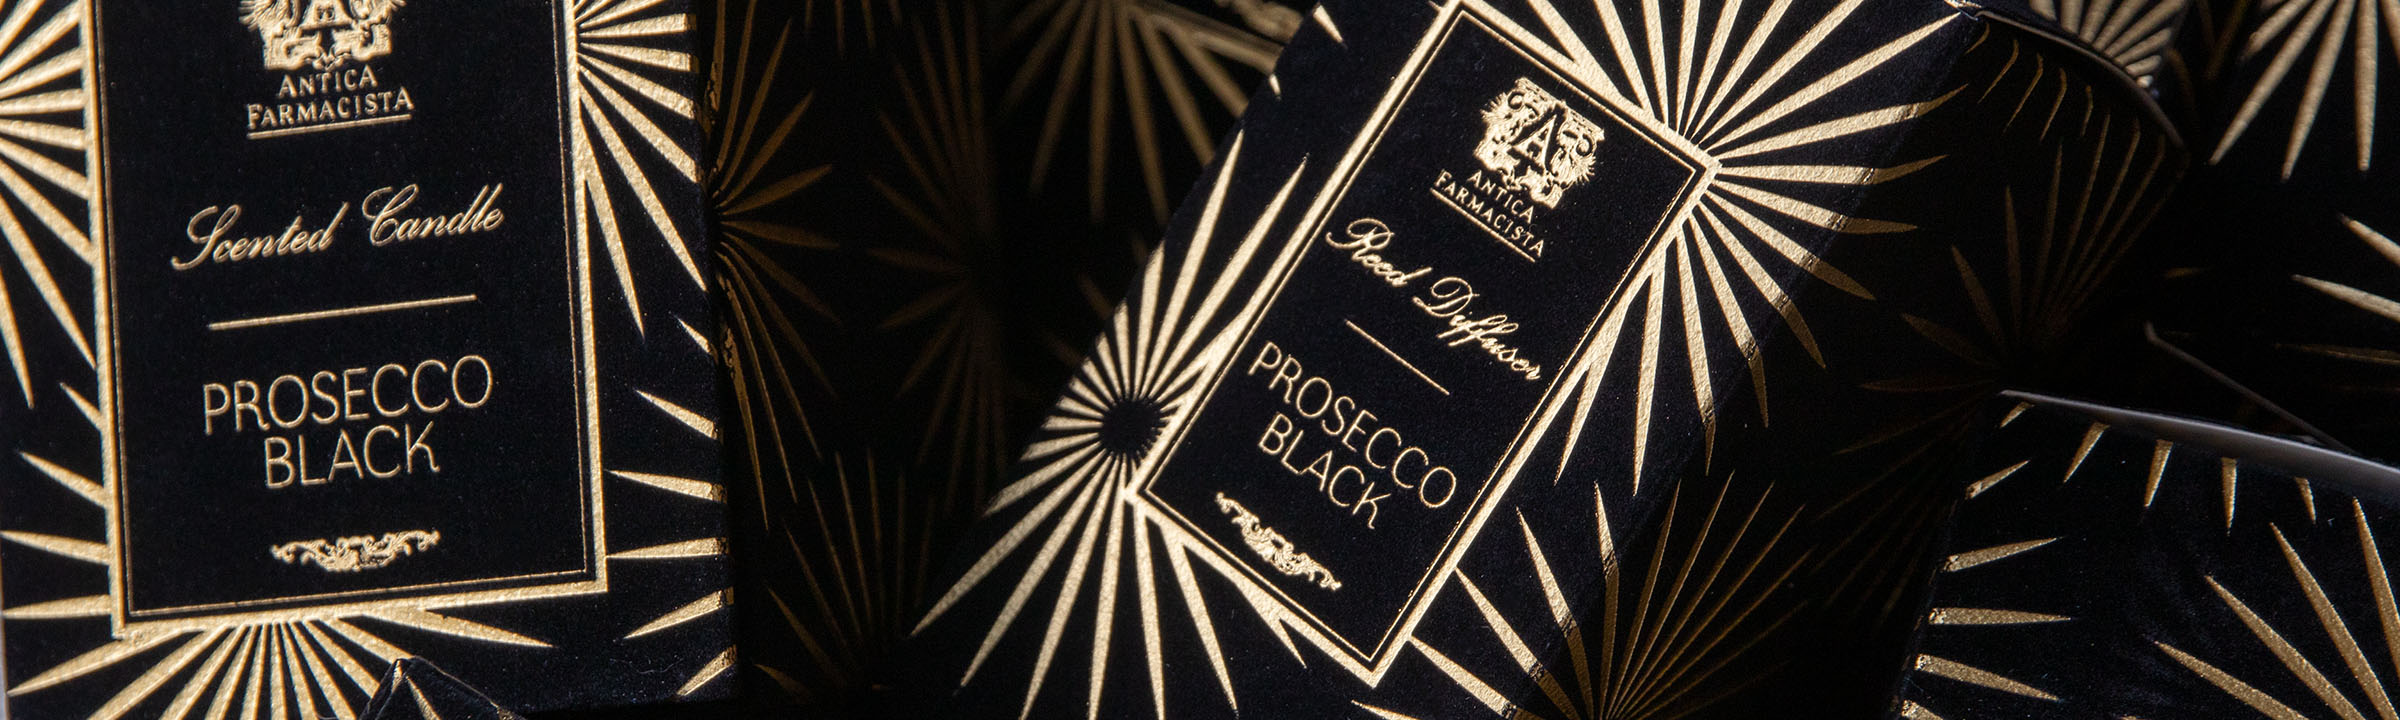 Prosecco Black